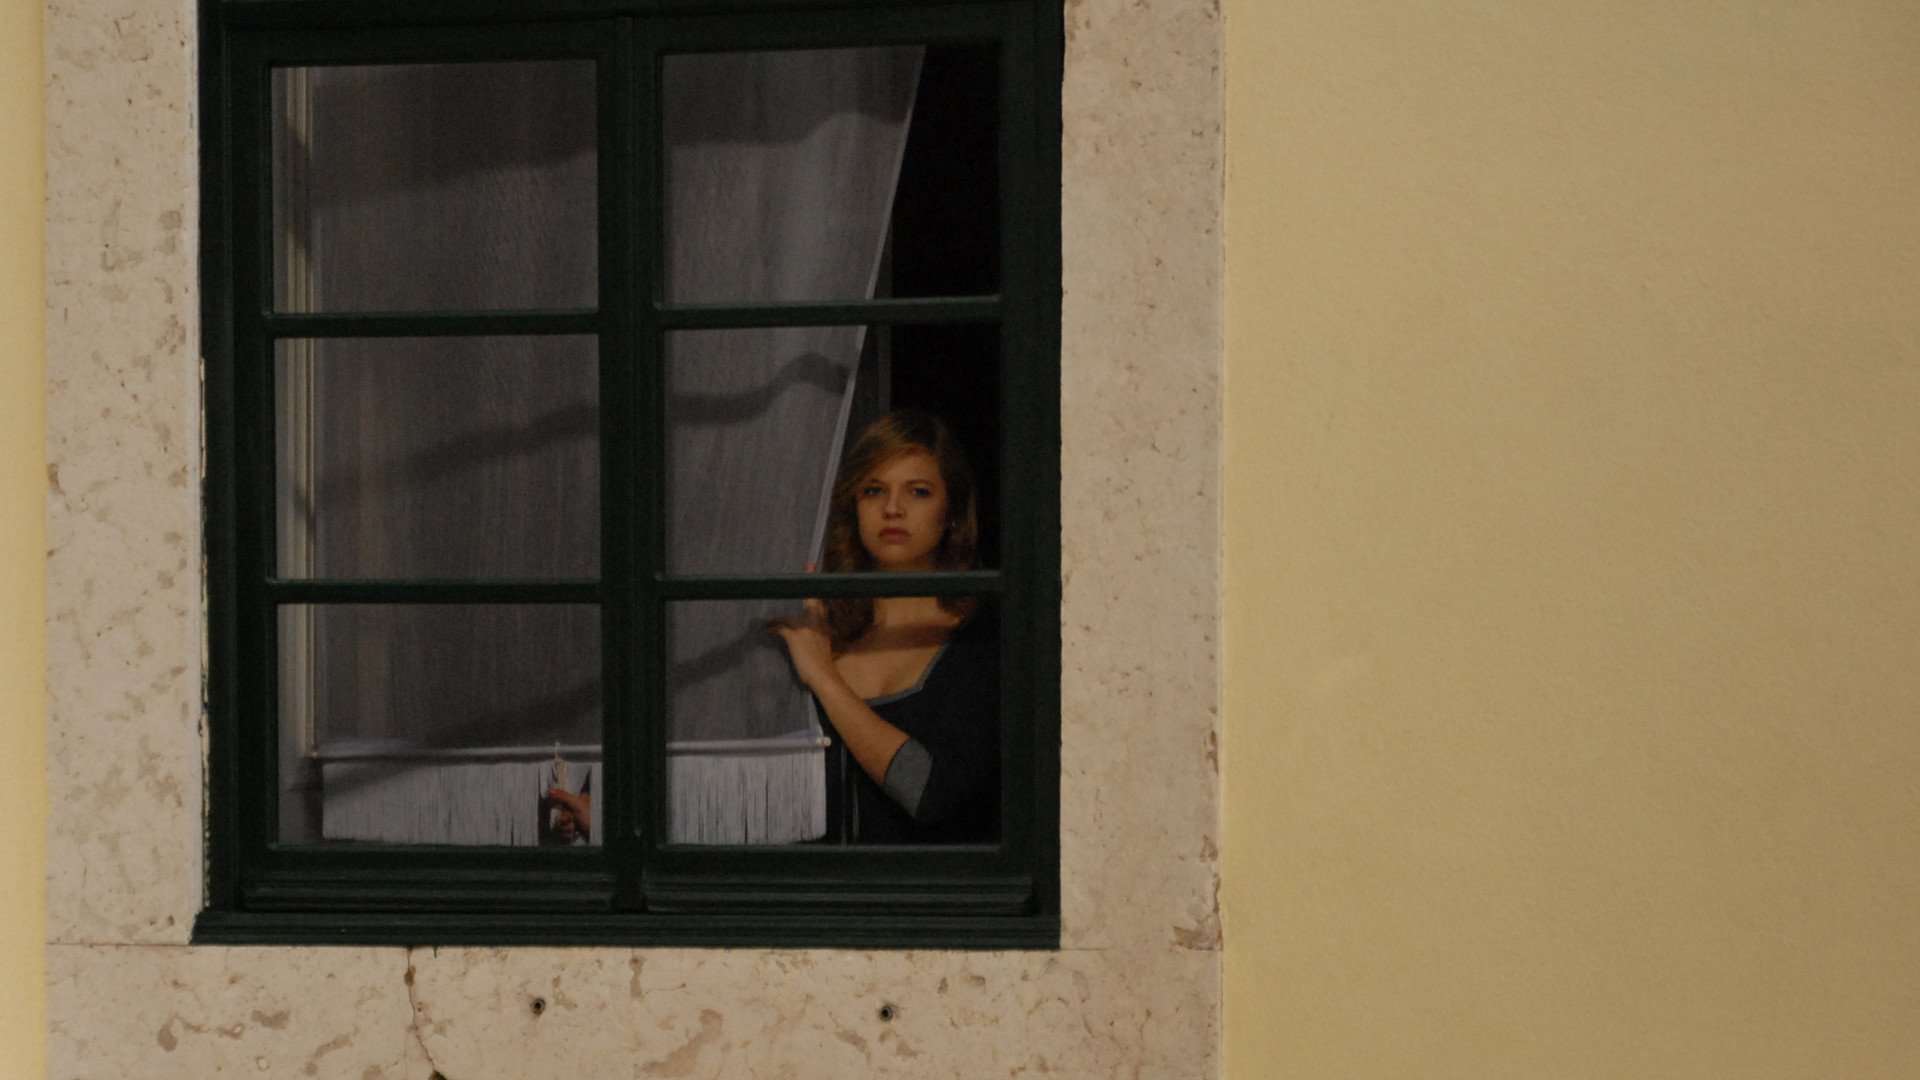 Соседская тетя. Окна напротив. Девошка в окне на против. Девушка в окне напротив. Заглядывая в окна домов.